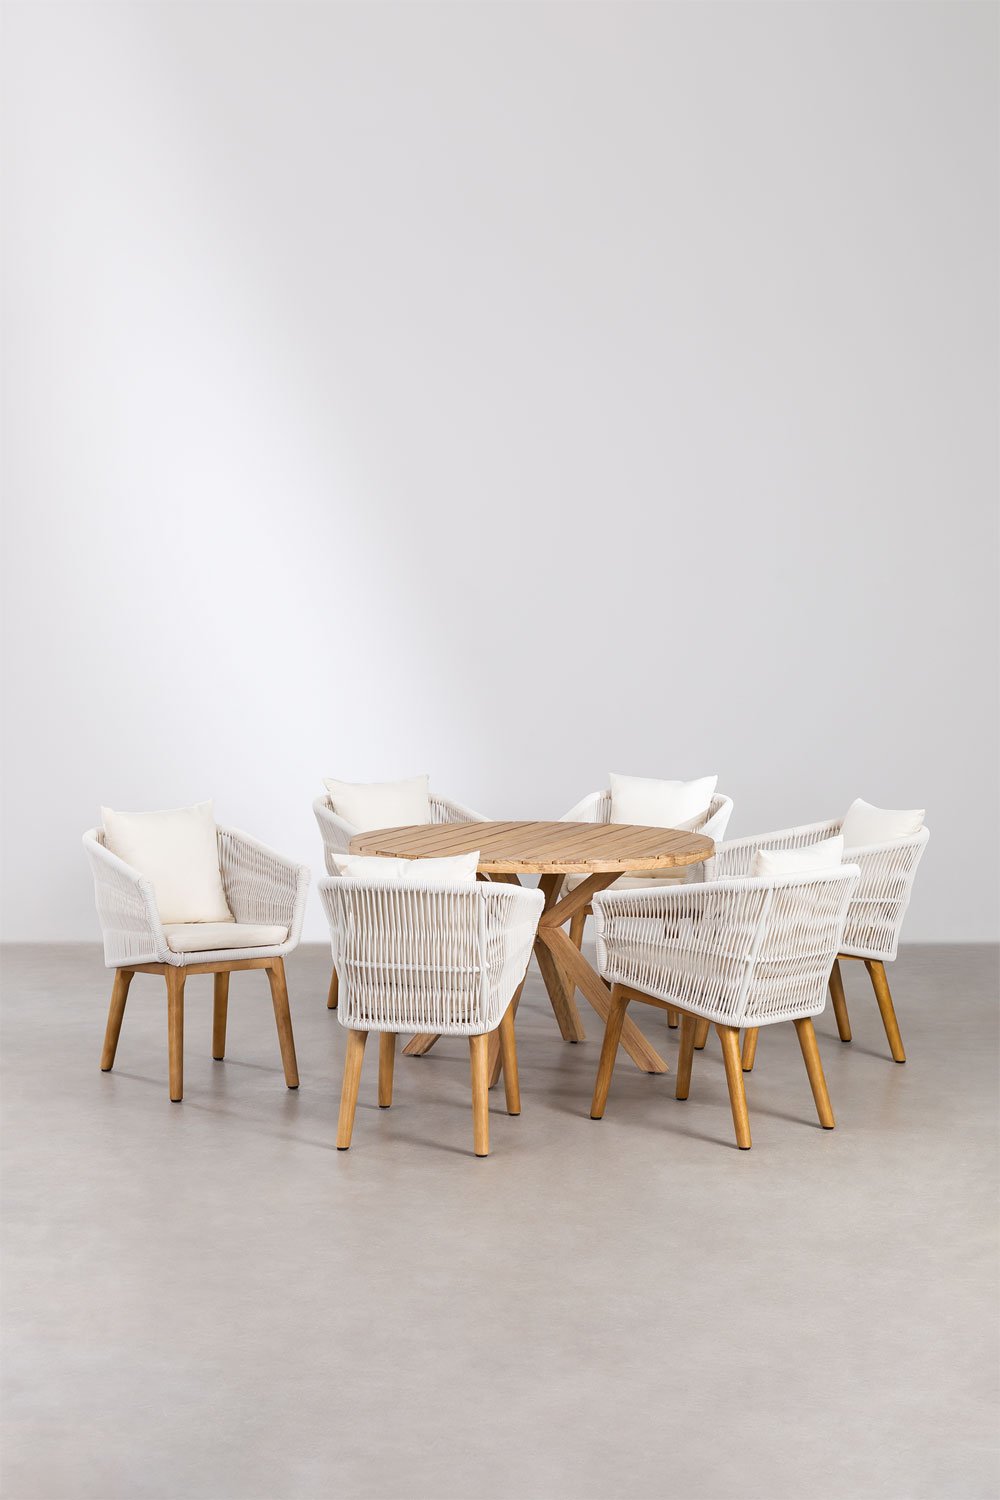 Okrągły drewniany stół (Ø120 cm) Naele i 6 krzeseł ogrodowych Barker, obrazek w galerii 1